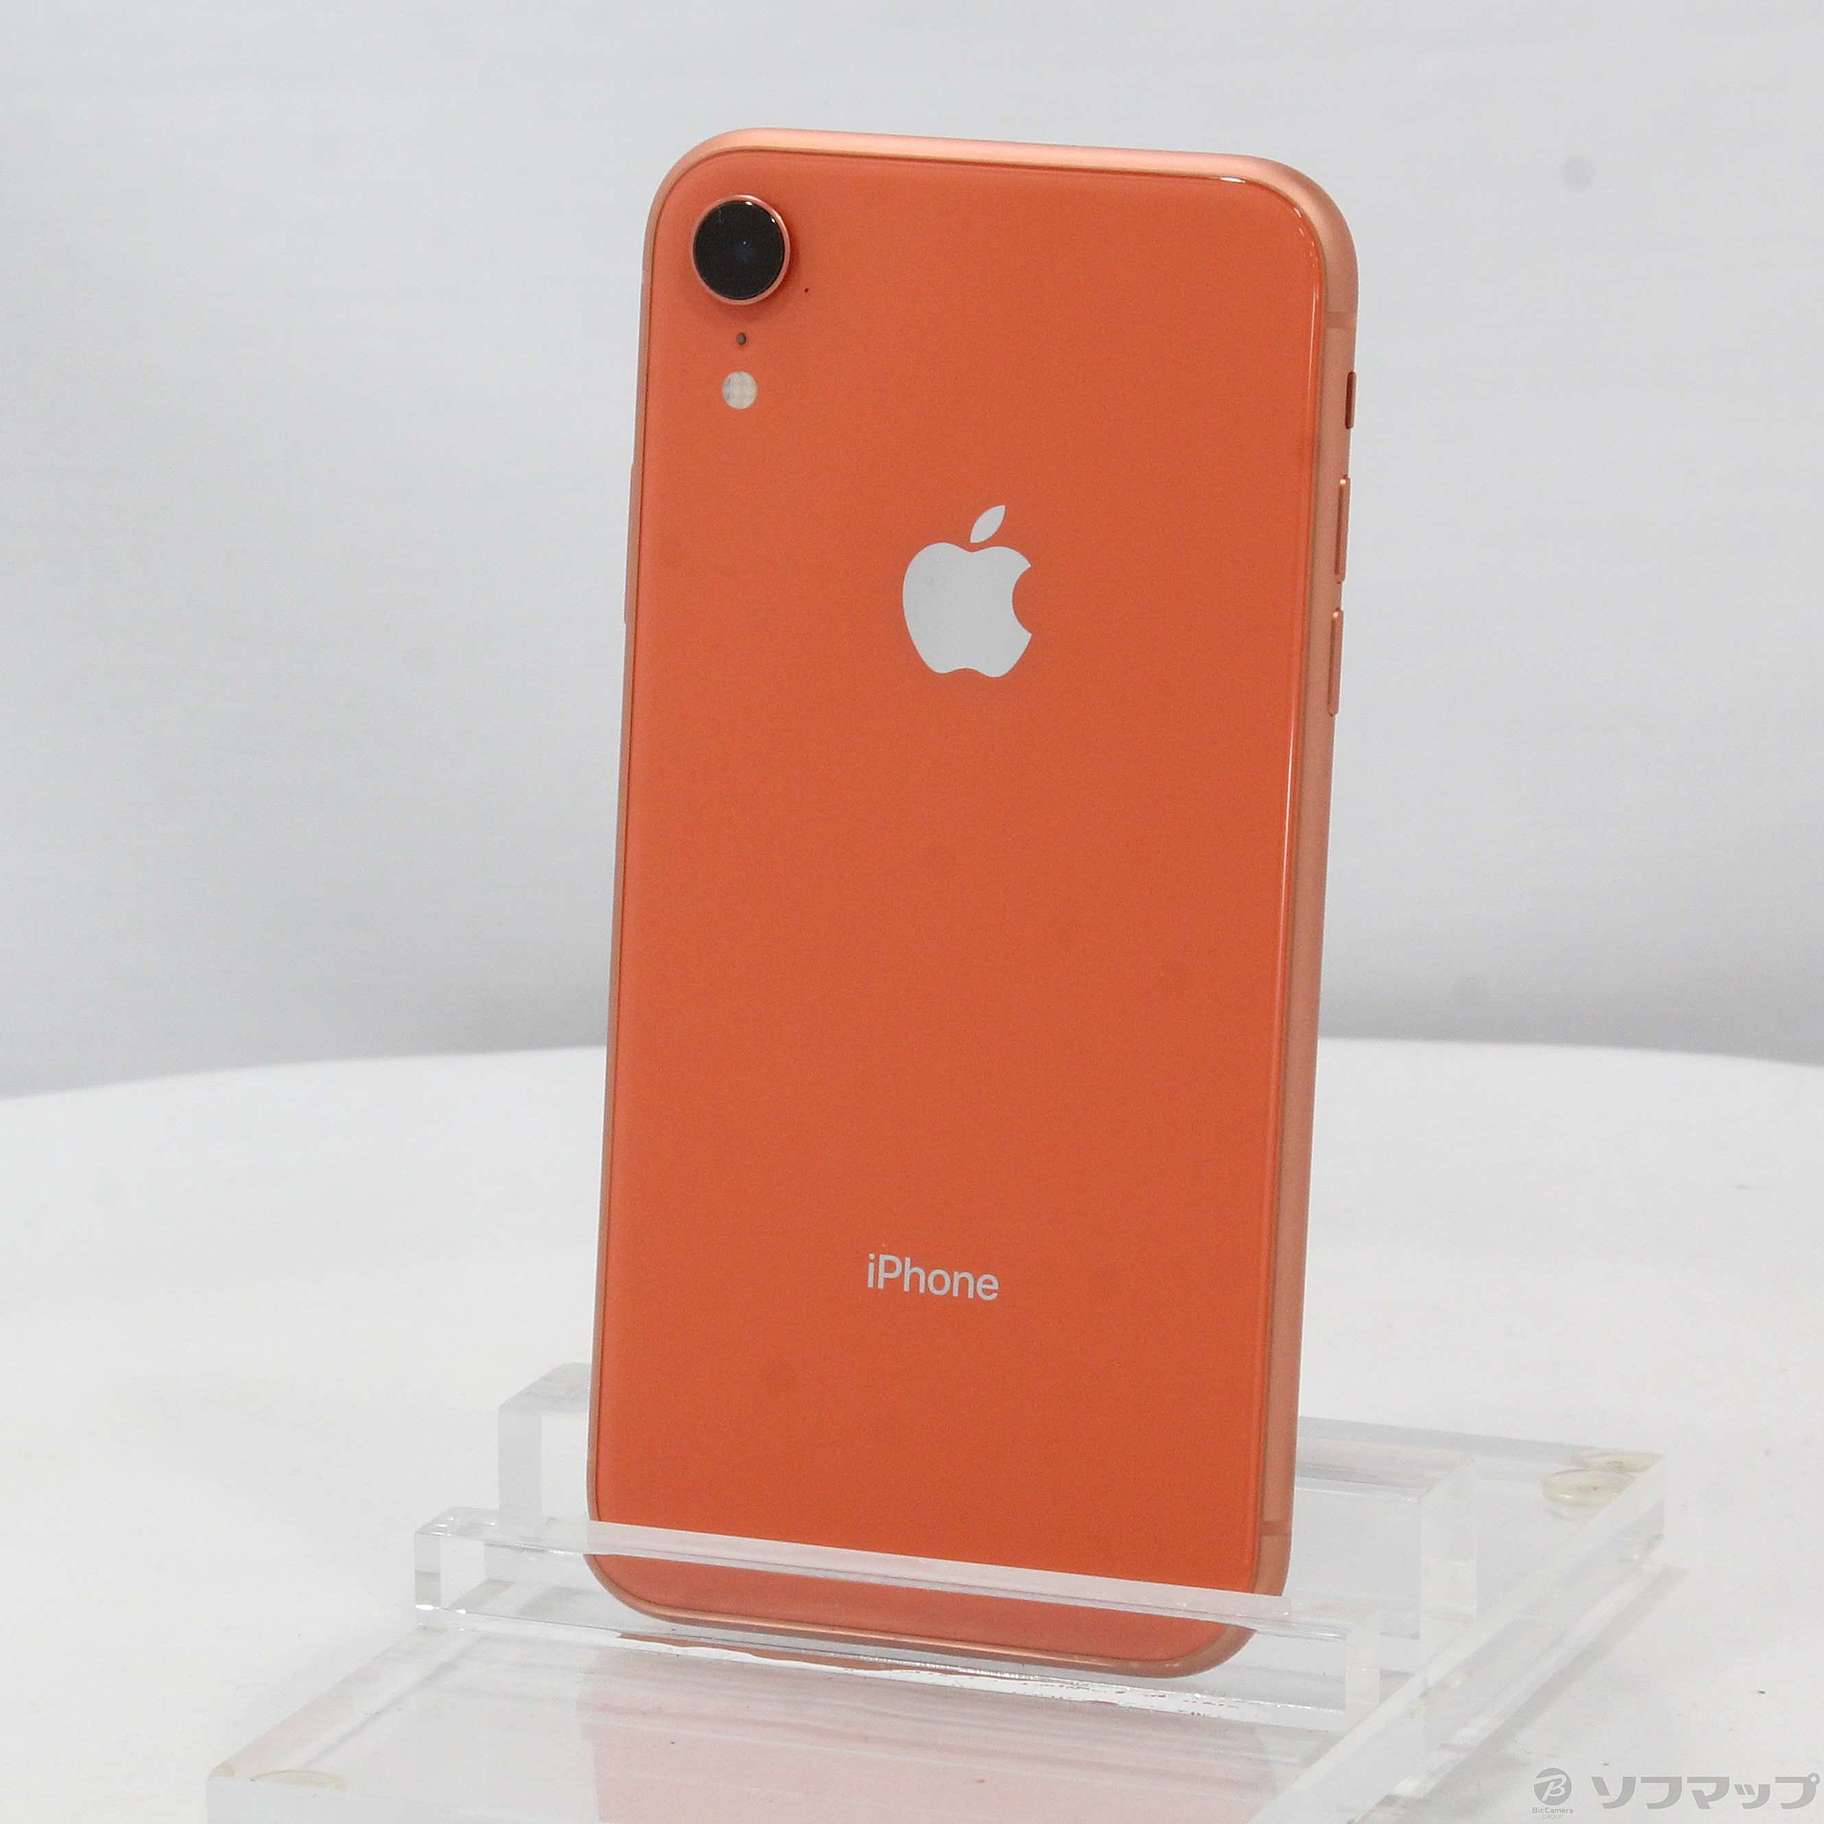 iPhone XR Coral 64GB Softbank 美品 www.krzysztofbialy.com